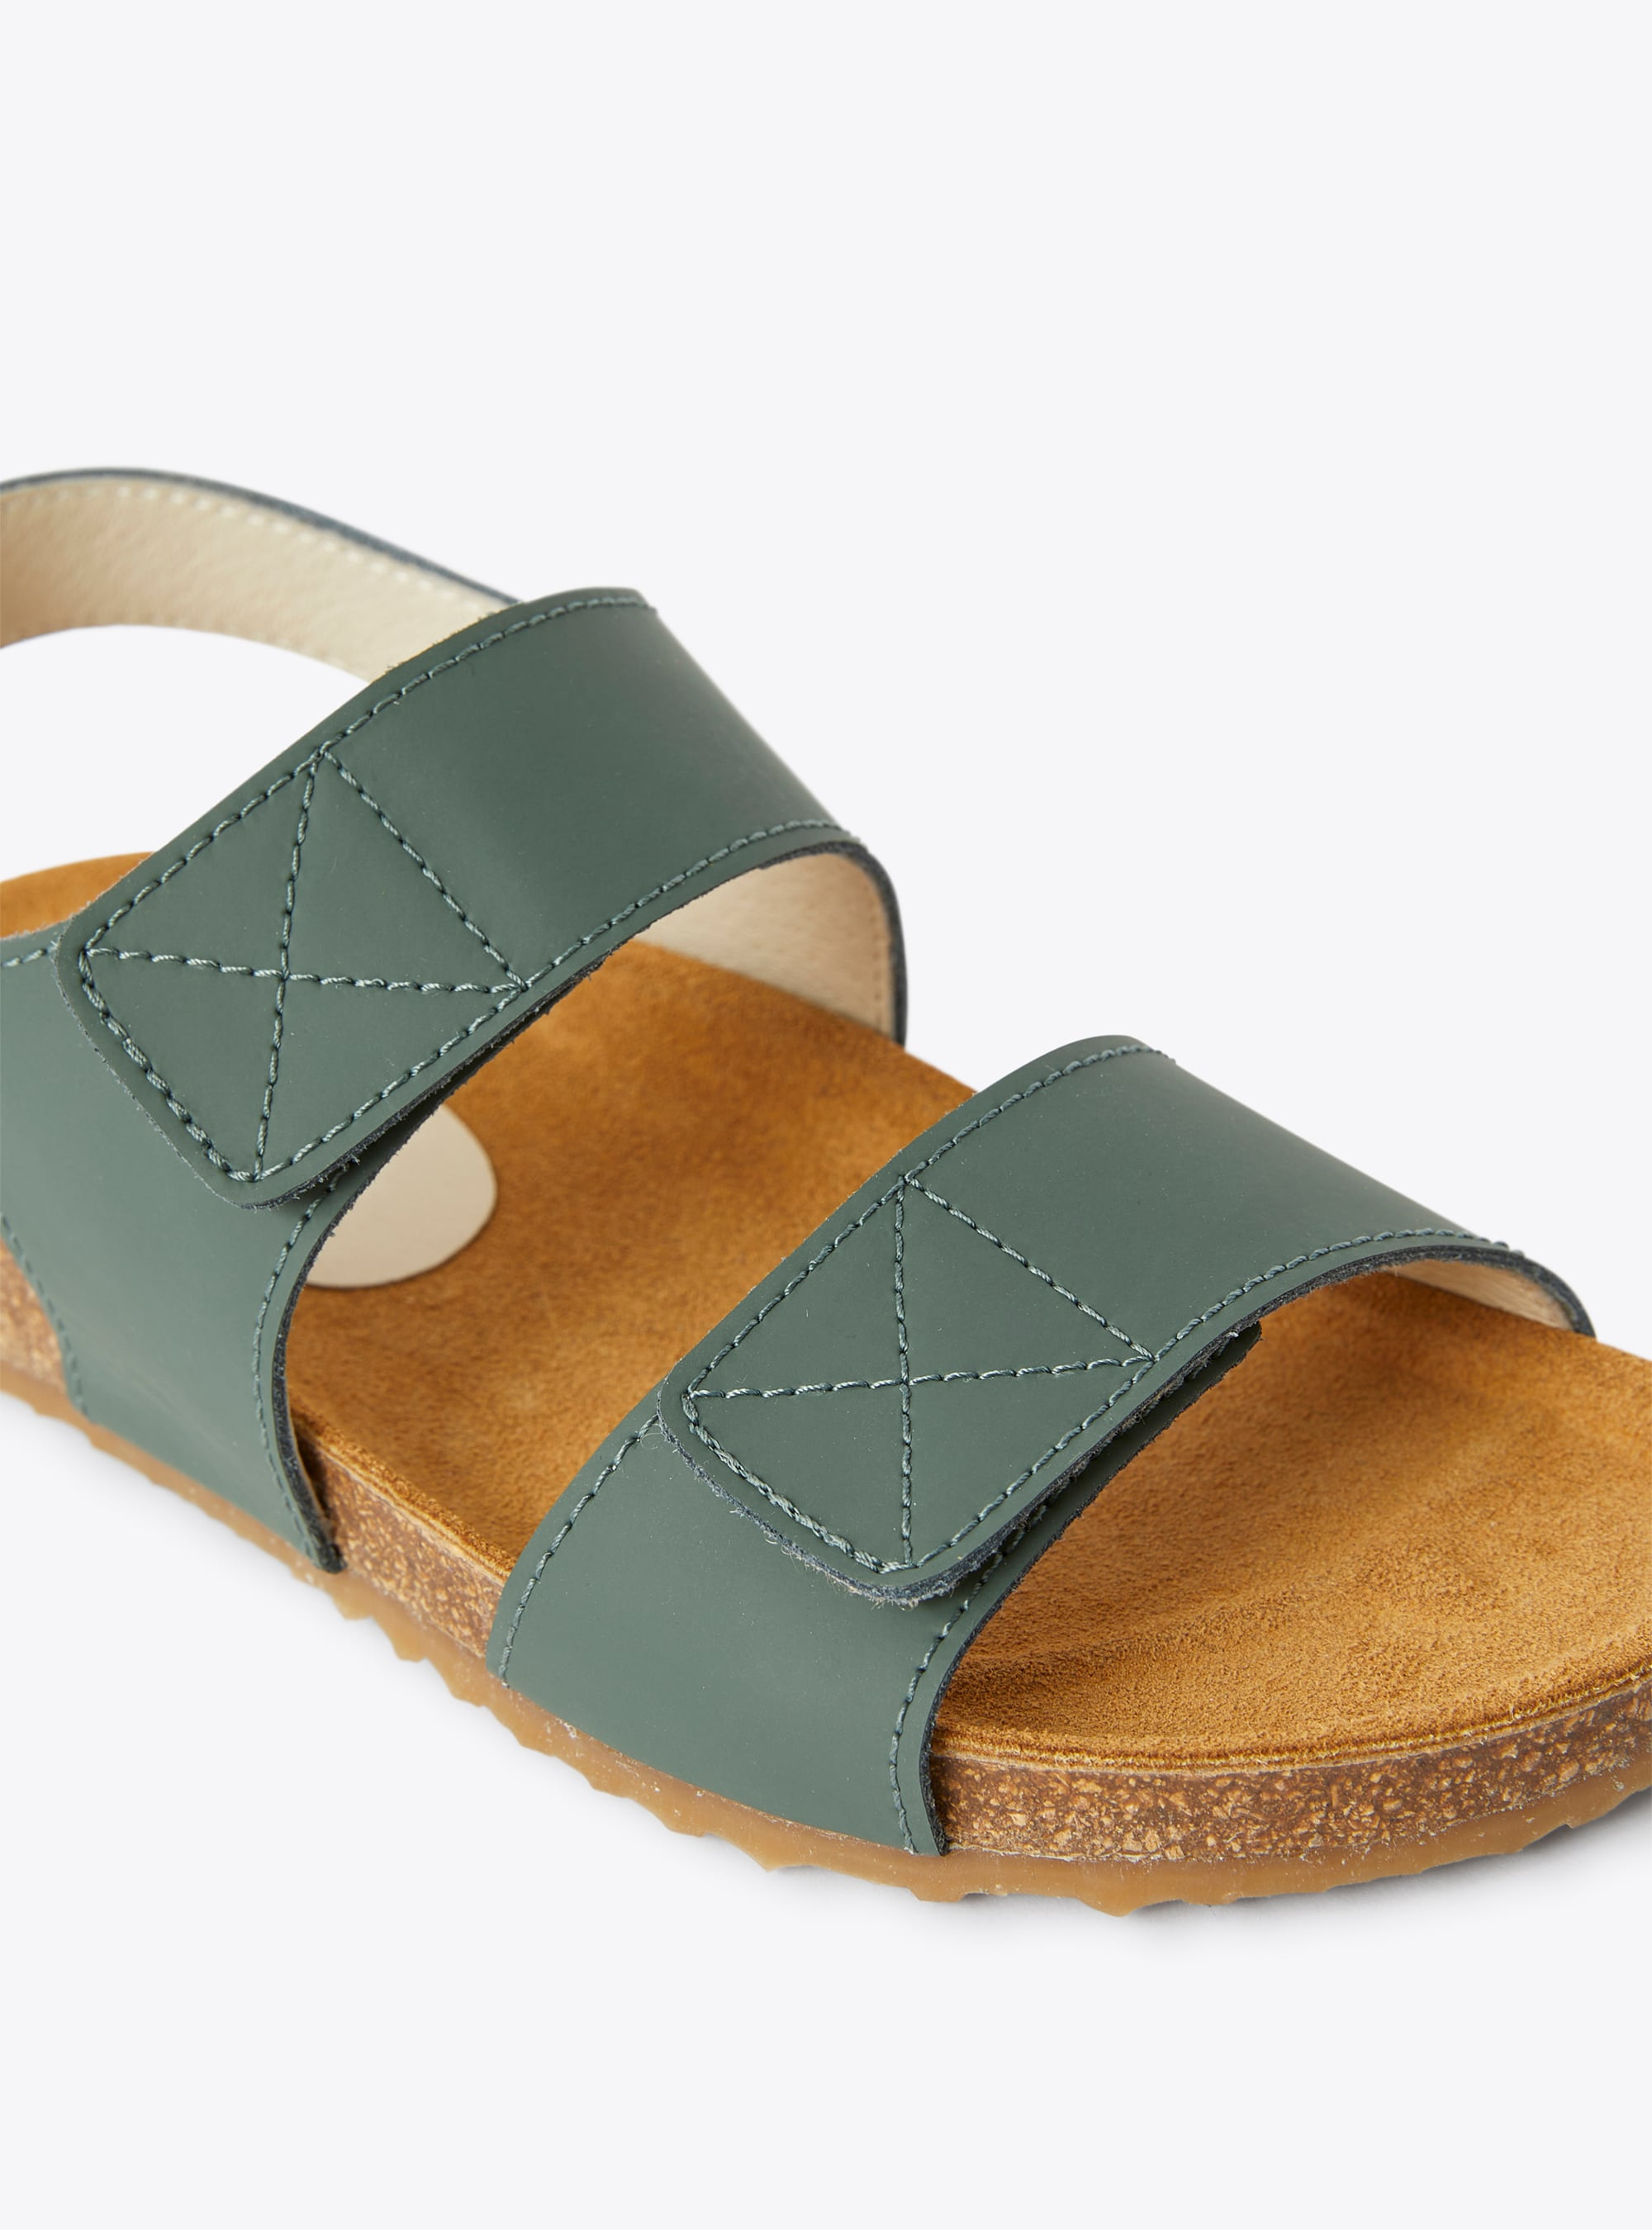 Sandalo in pelle a doppio strappo verde salvia - Verde | Il Gufo